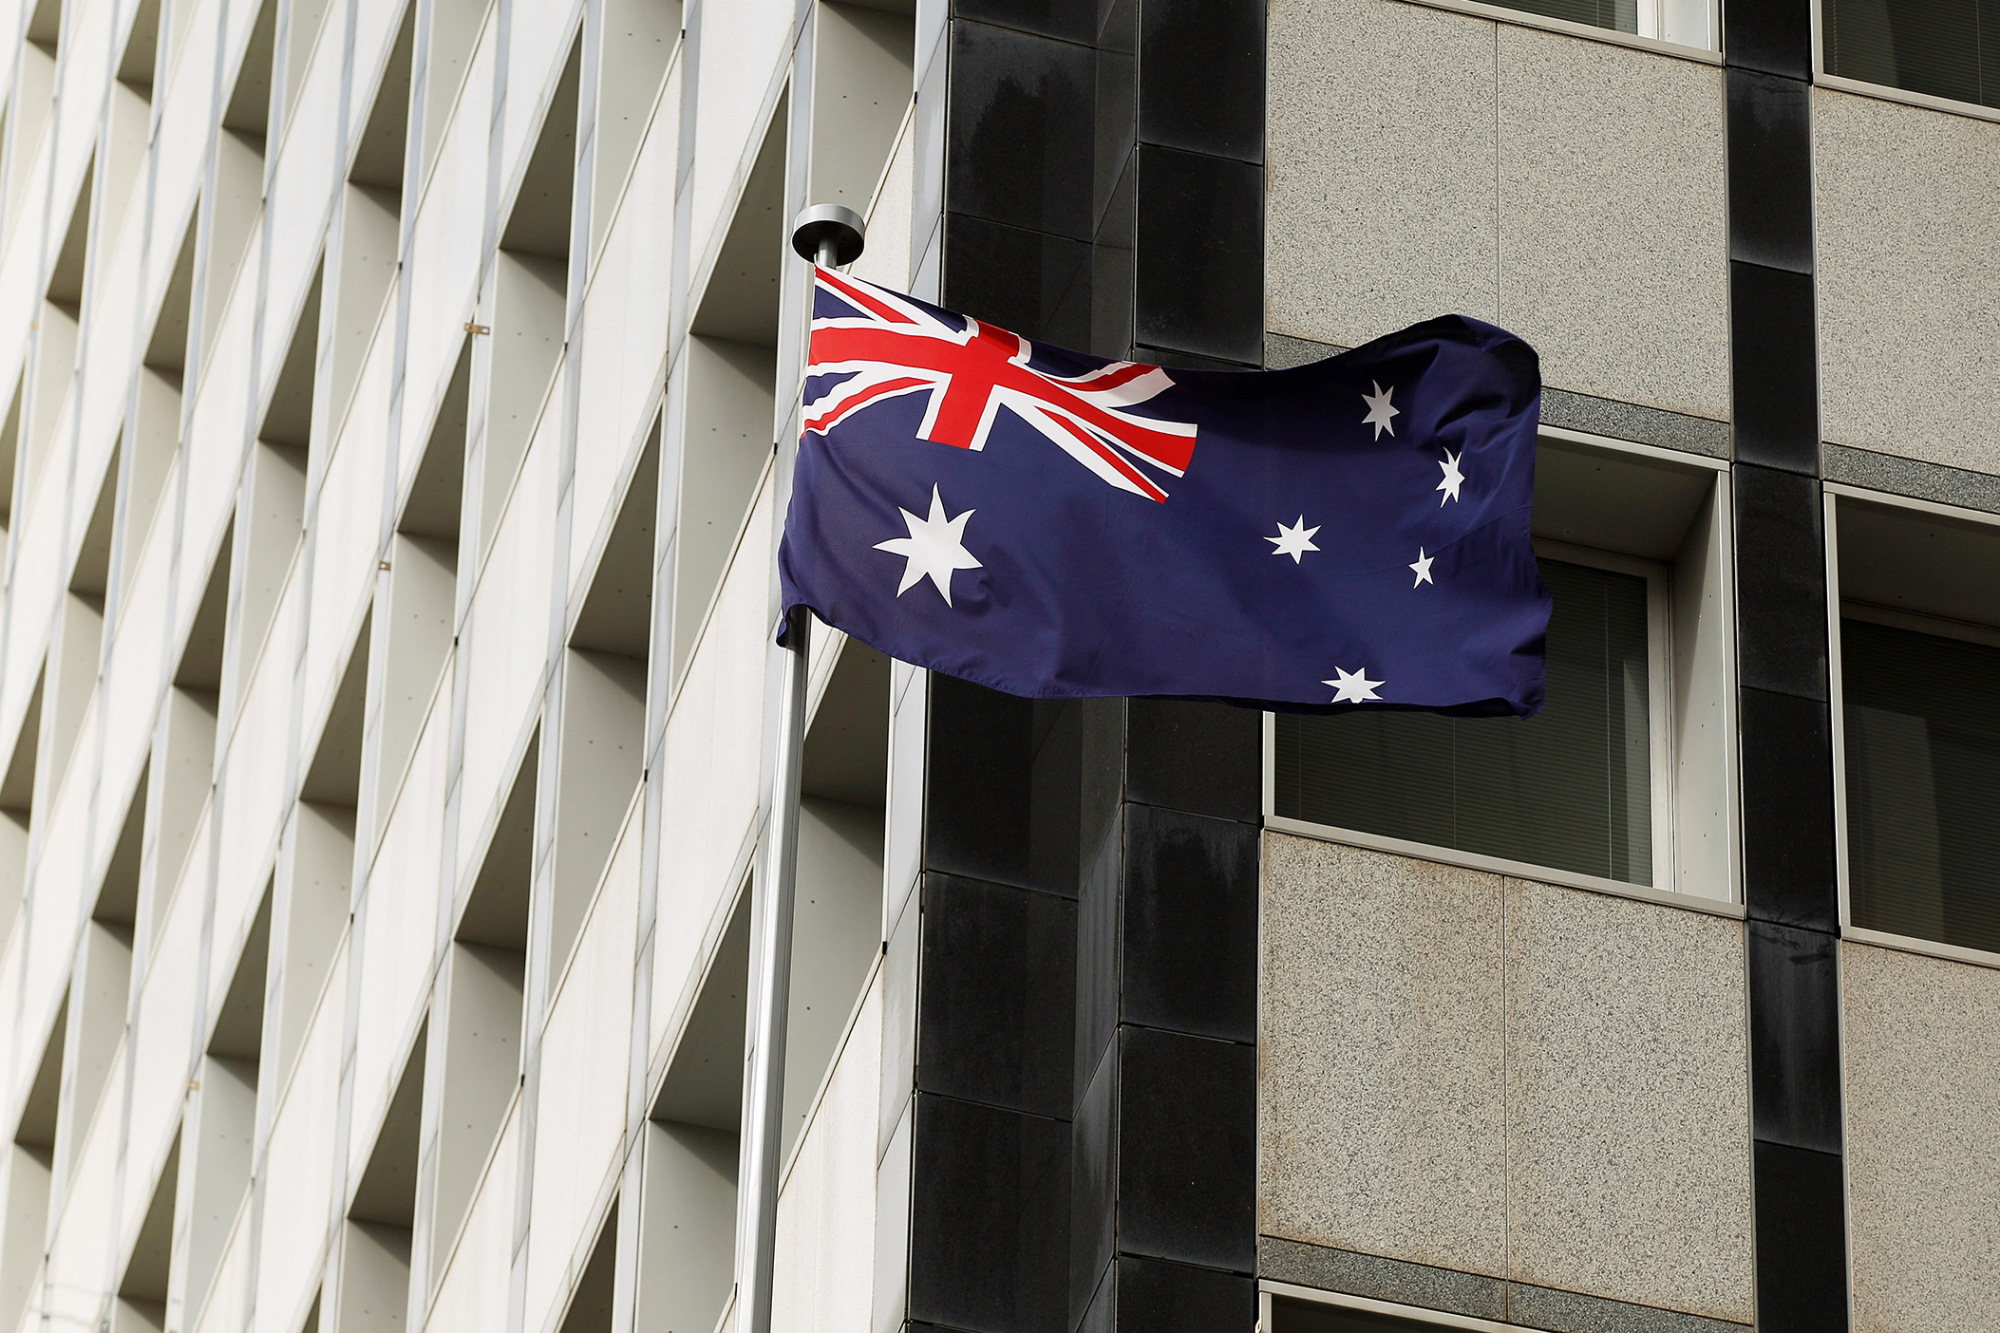 Rallying Australian Stocks Propelled by Bonds on RBA Hopes - BNN Bloomberg